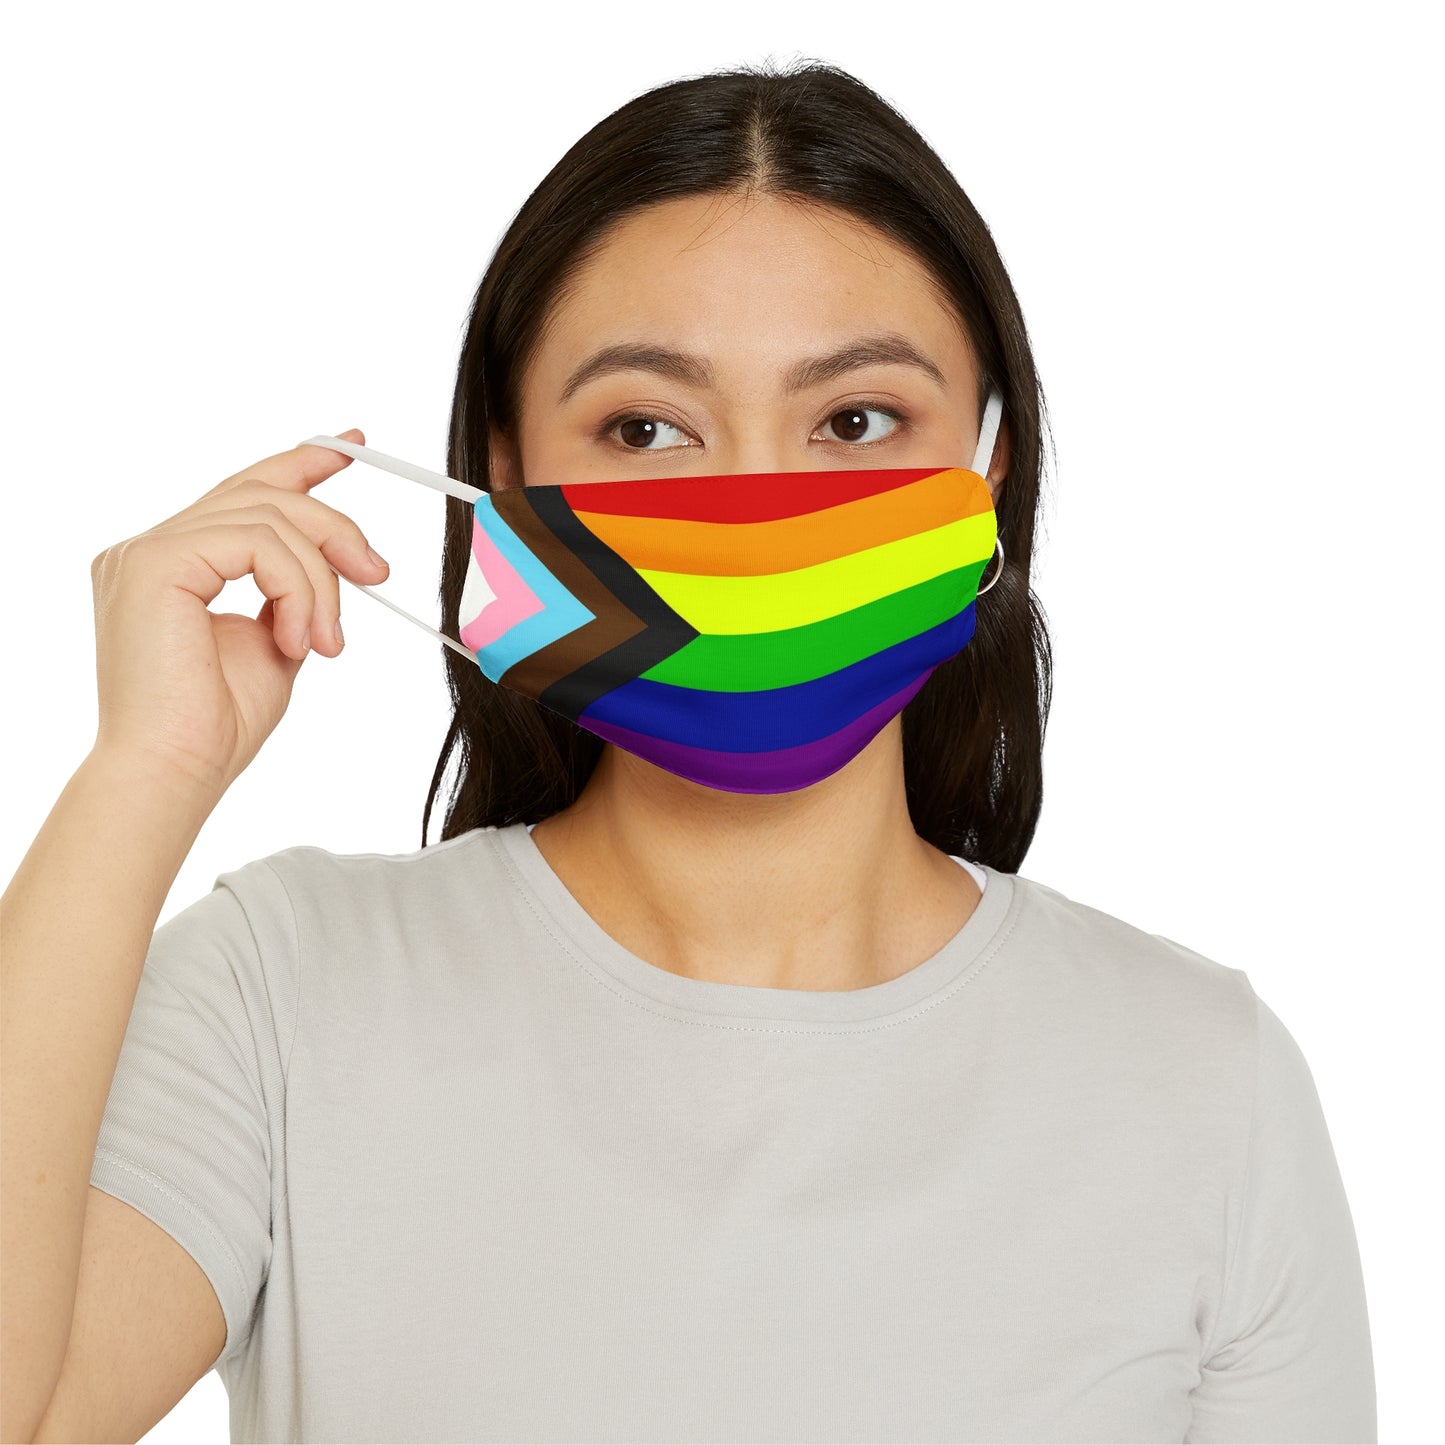 New Progress Pride LGBTQ Snug-Fit Fabric Face Mask